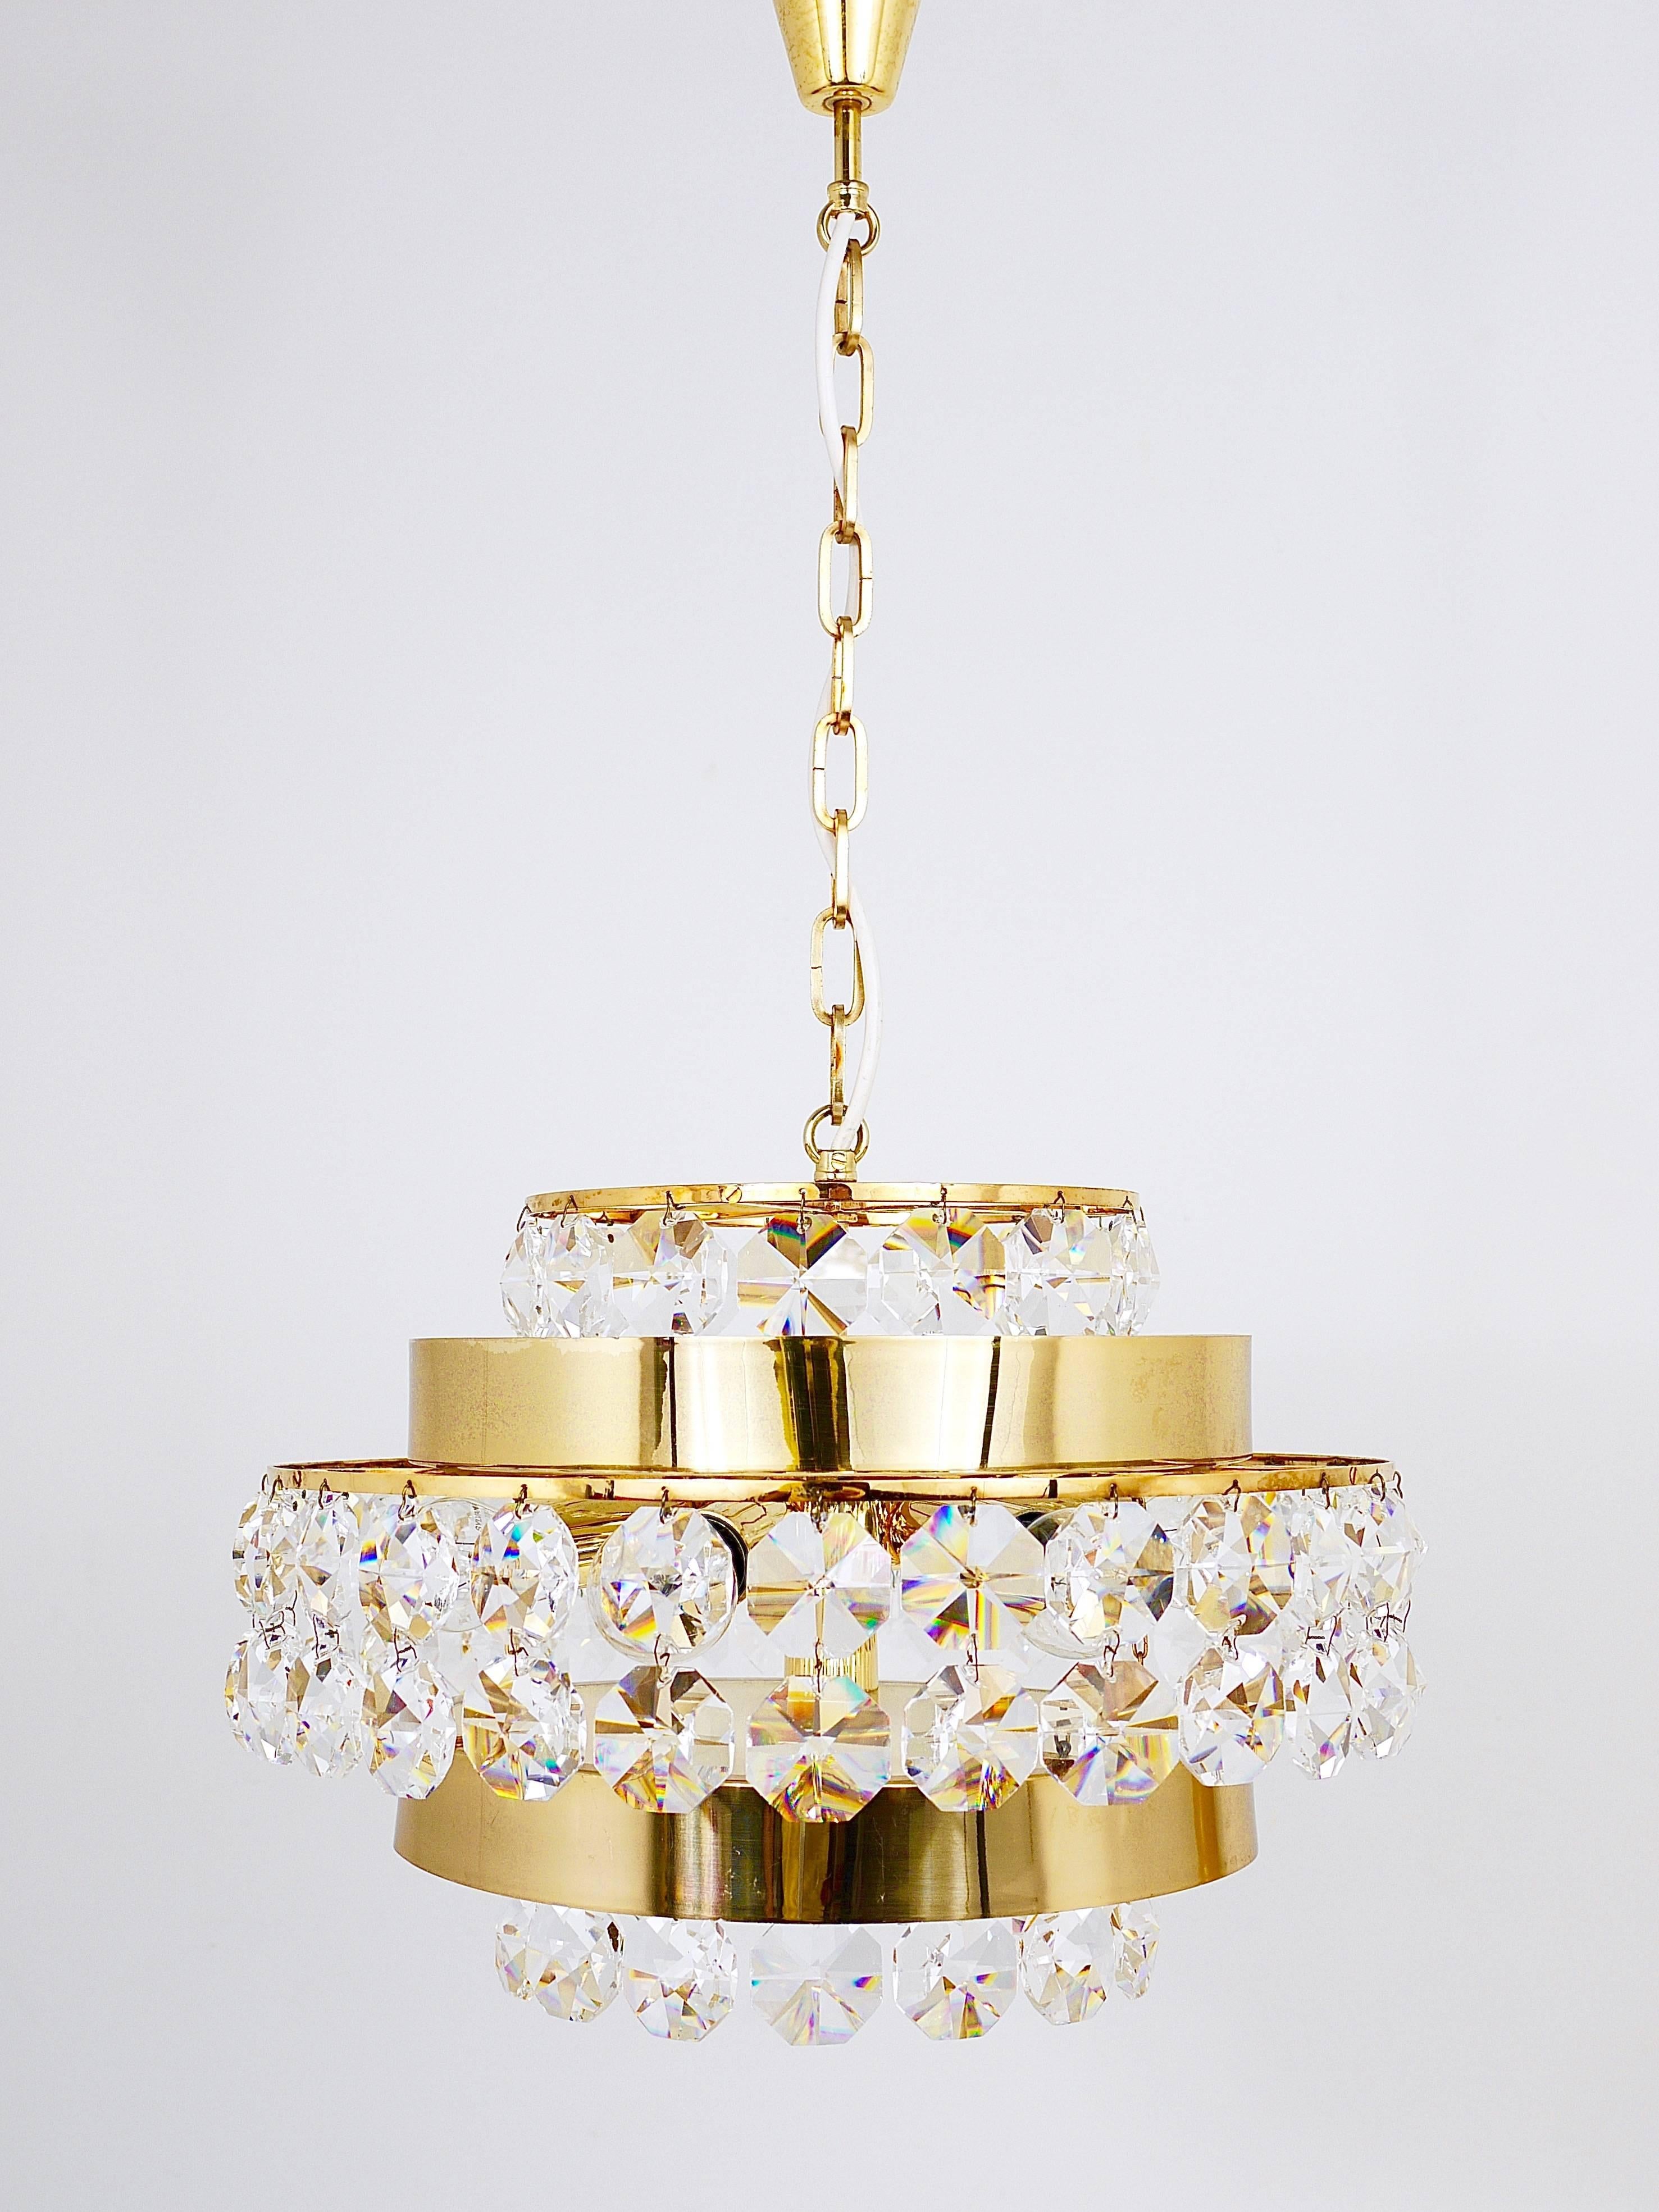 Magnifique lustre en laiton doré fabriqué dans les années 1970 par Bakalowits & Sohn en Autriche. Cette pièce exquise comporte trois niveaux ornés de grands cristaux octogonaux à facettes en forme de diamant et est éclairée par six sources